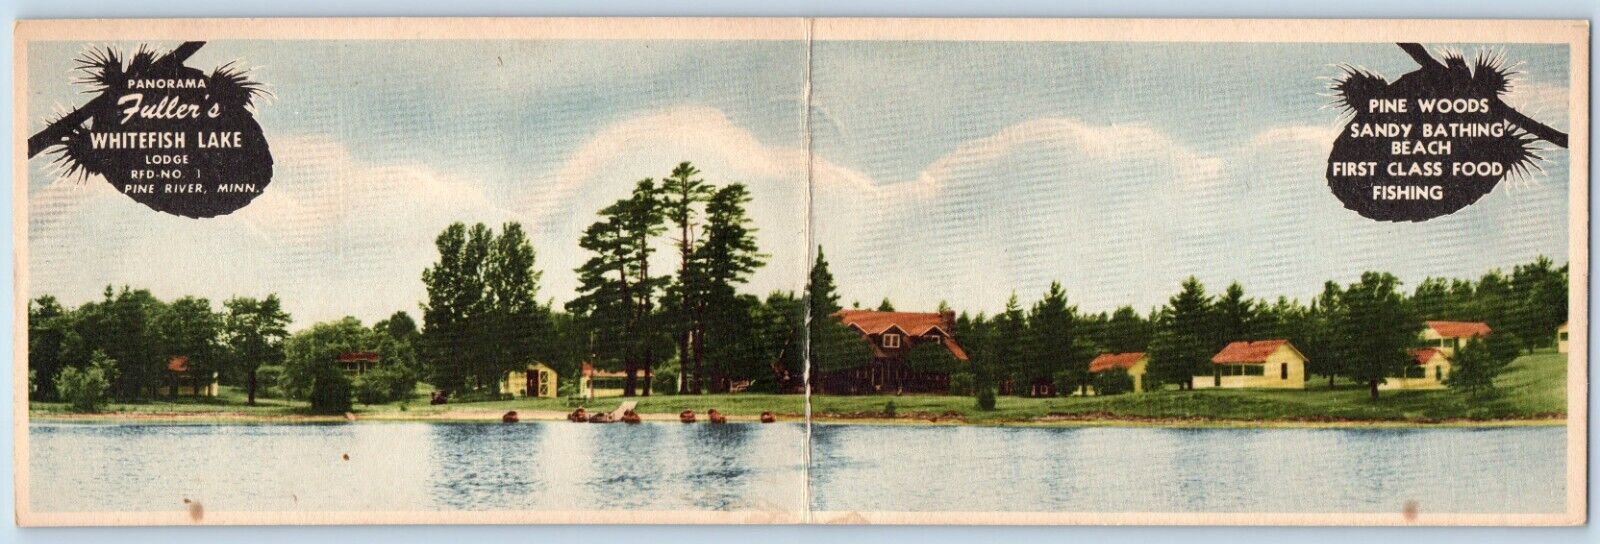 Pine River Minnesota MN Postcard Panorama Fuller's Whitefish Lake Lodge c1905